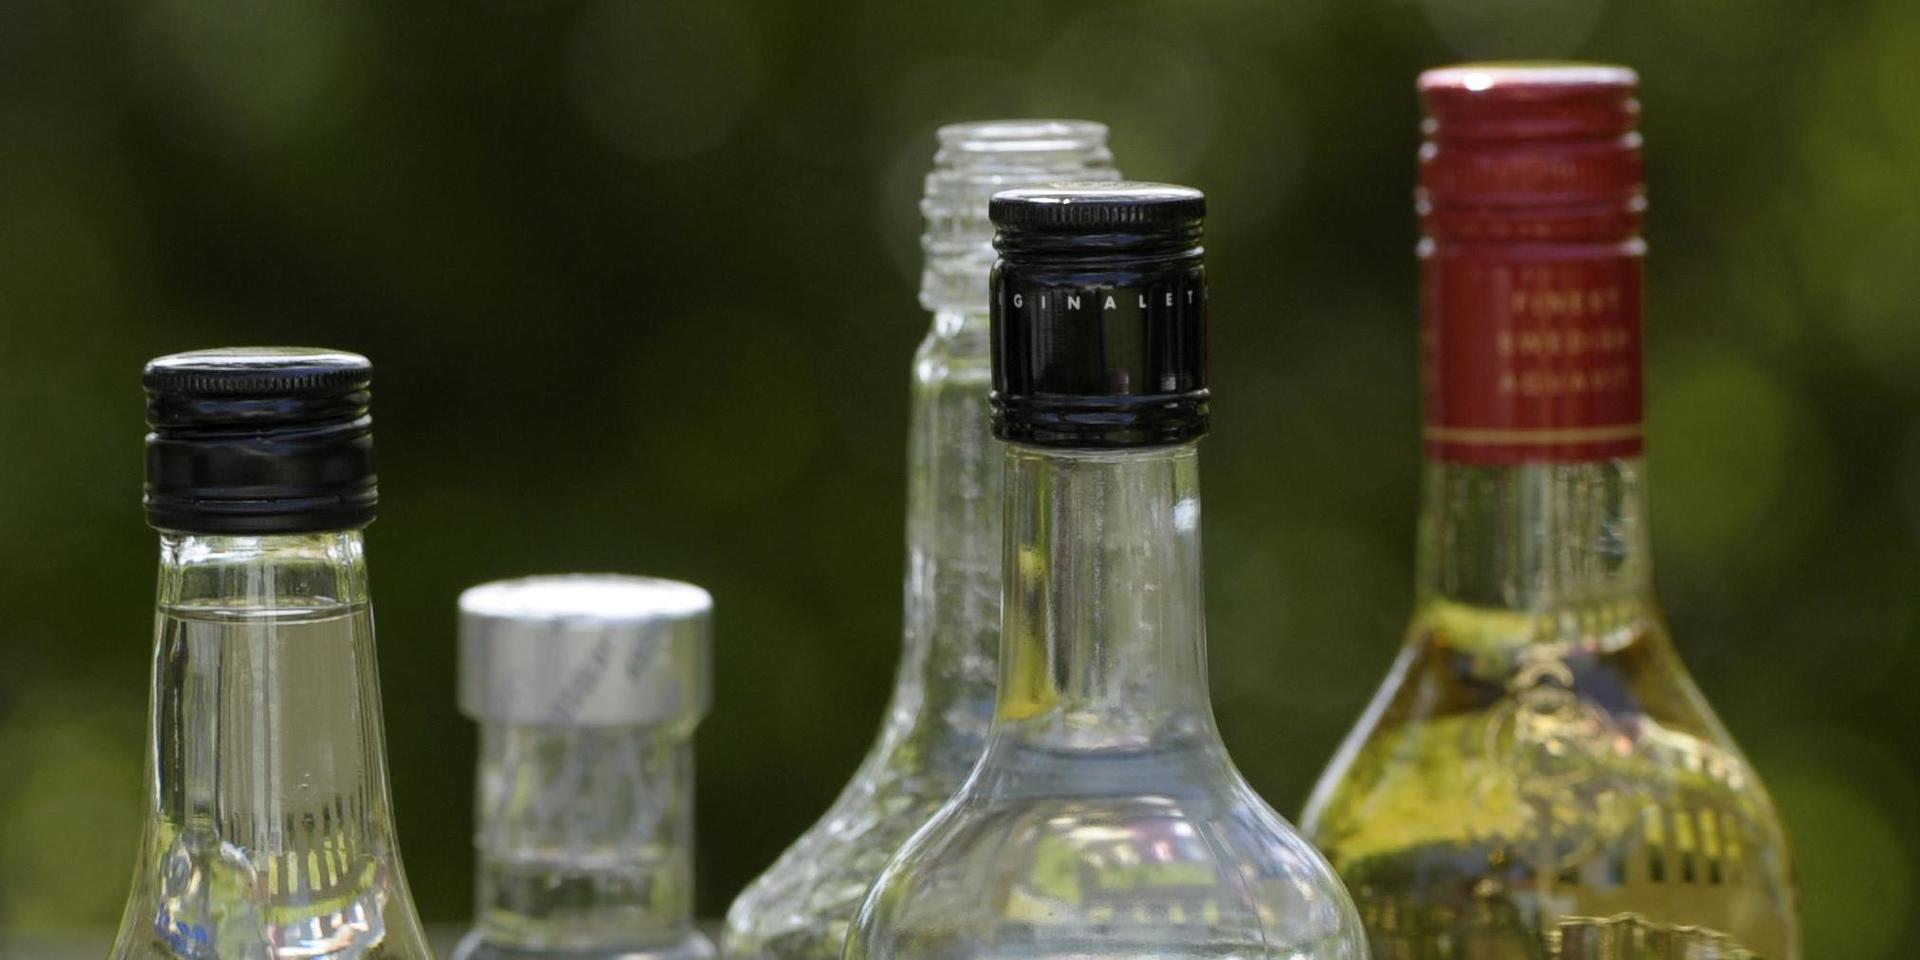 Den blandade alkoholen tros ha funnits i vanliga spritflaskor. Arkivbild.